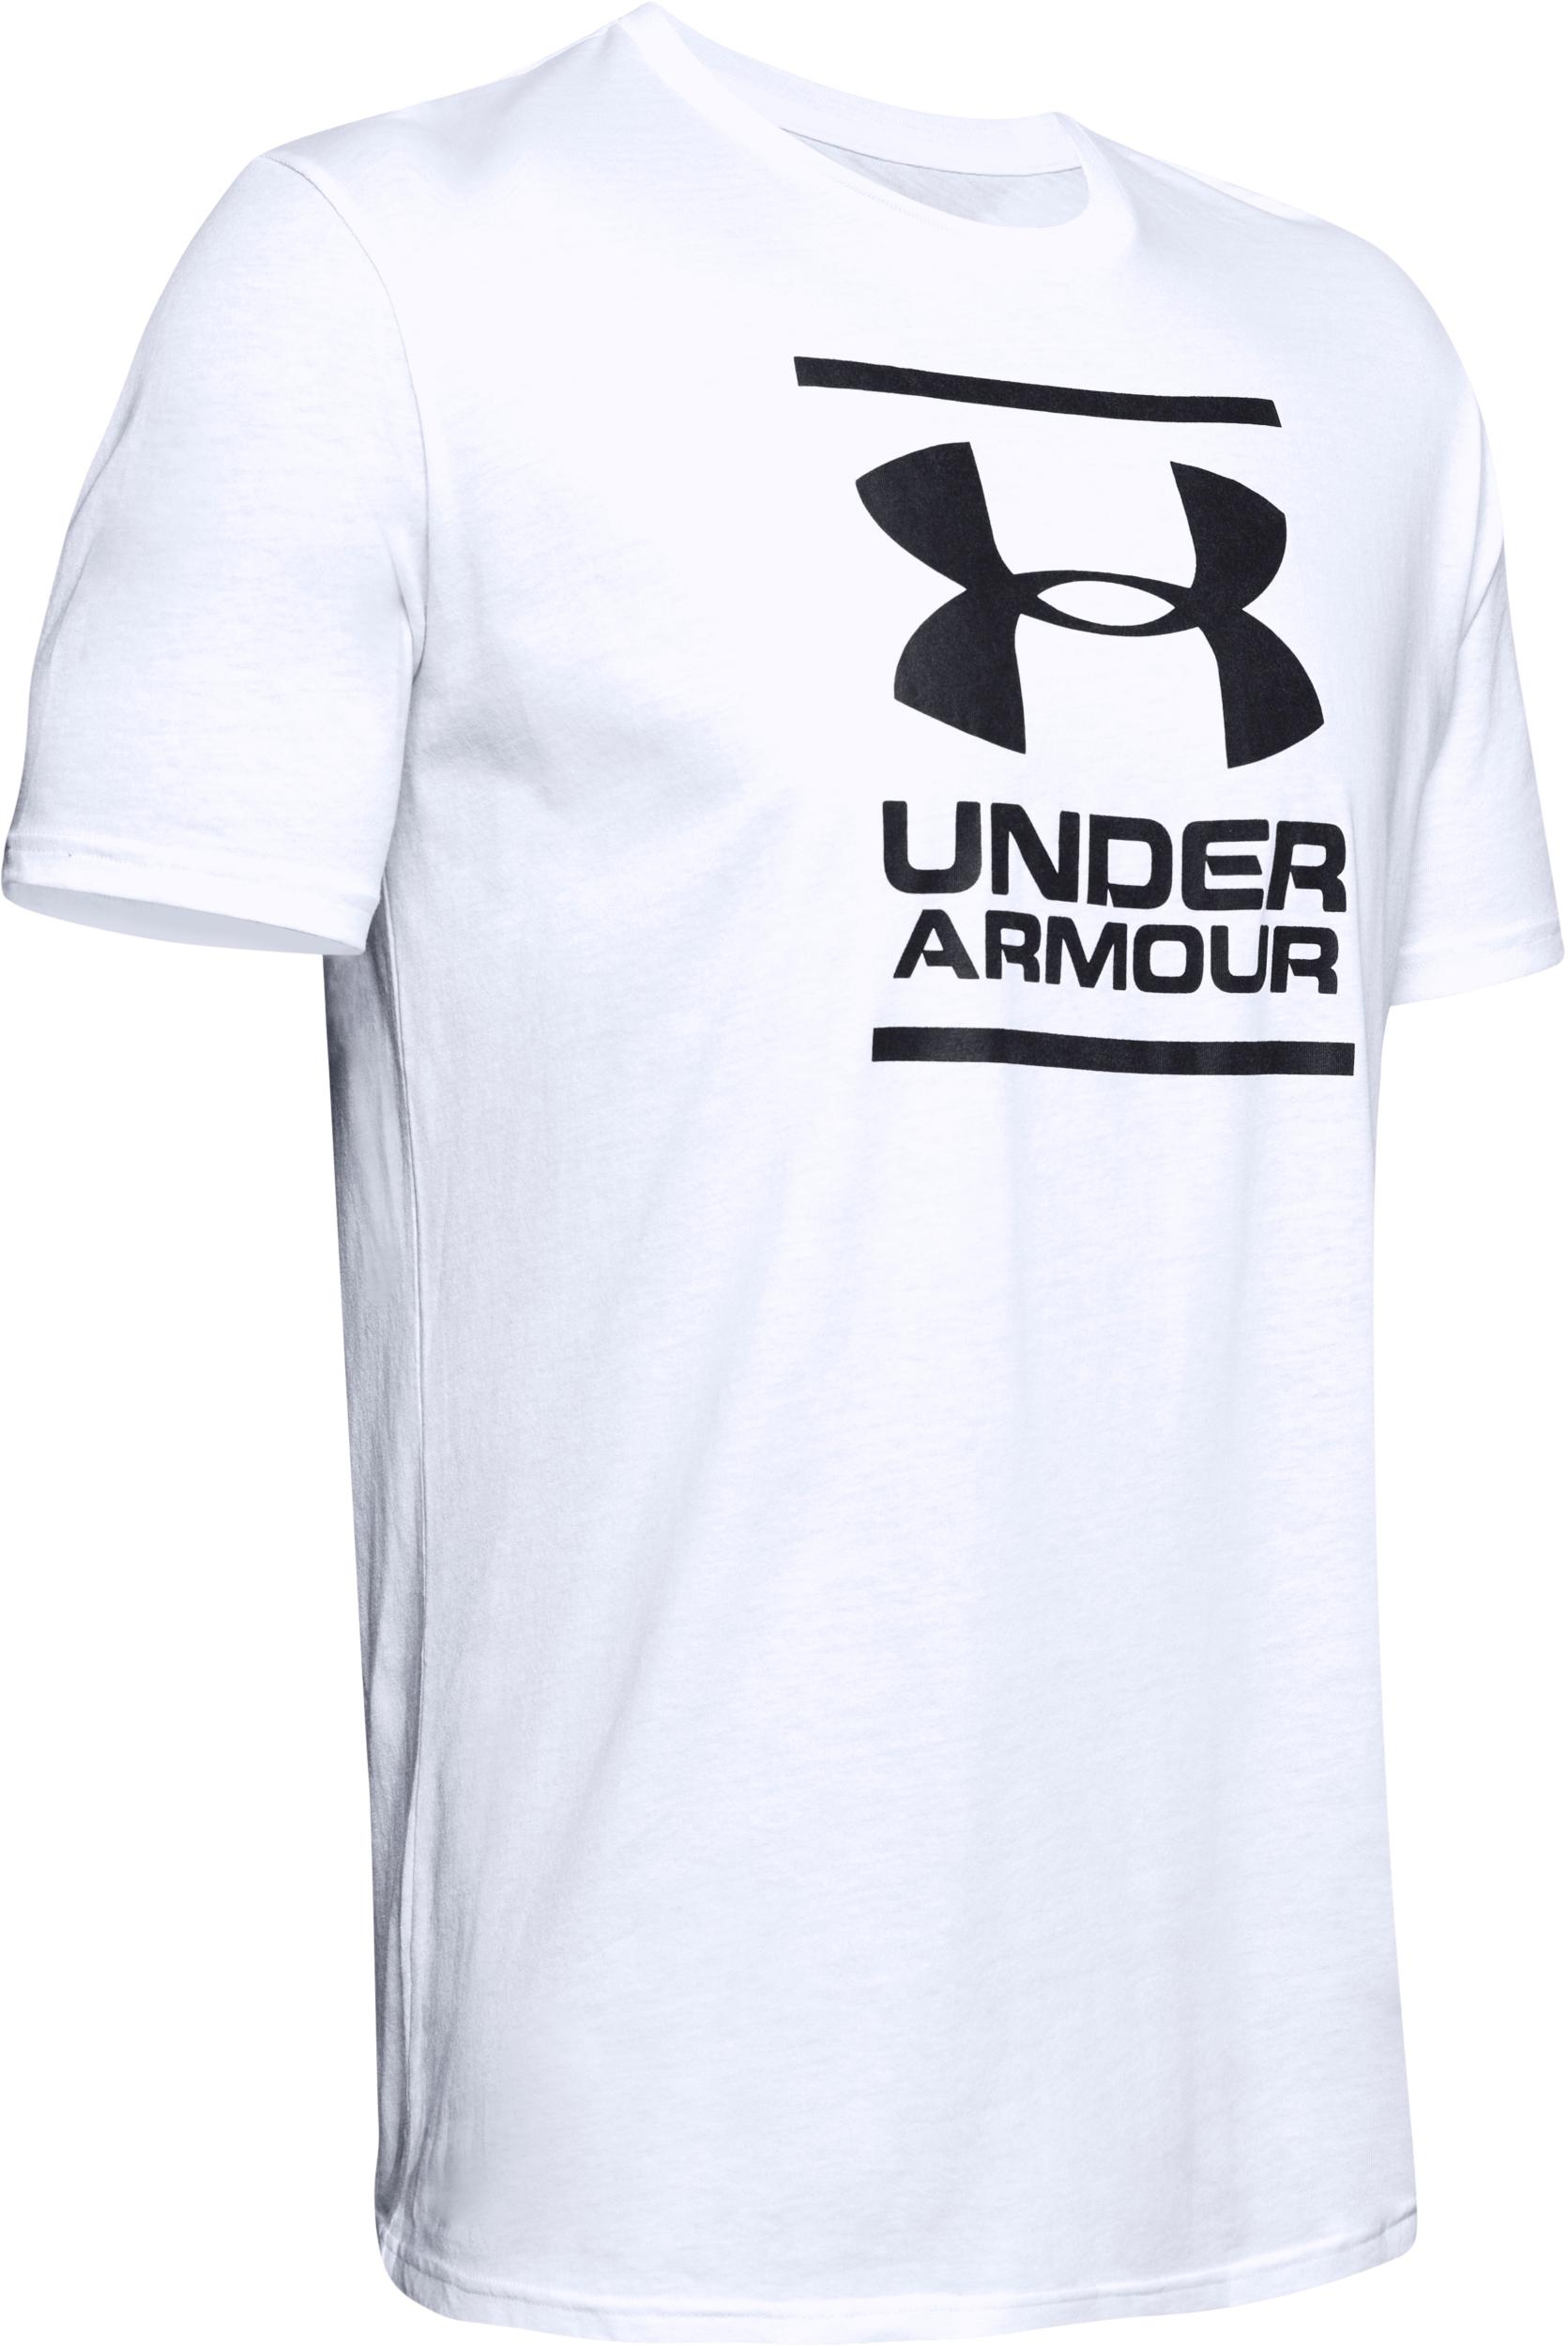 Under Armour GL FOUNDATION T-Shirt Herren white-black im Online